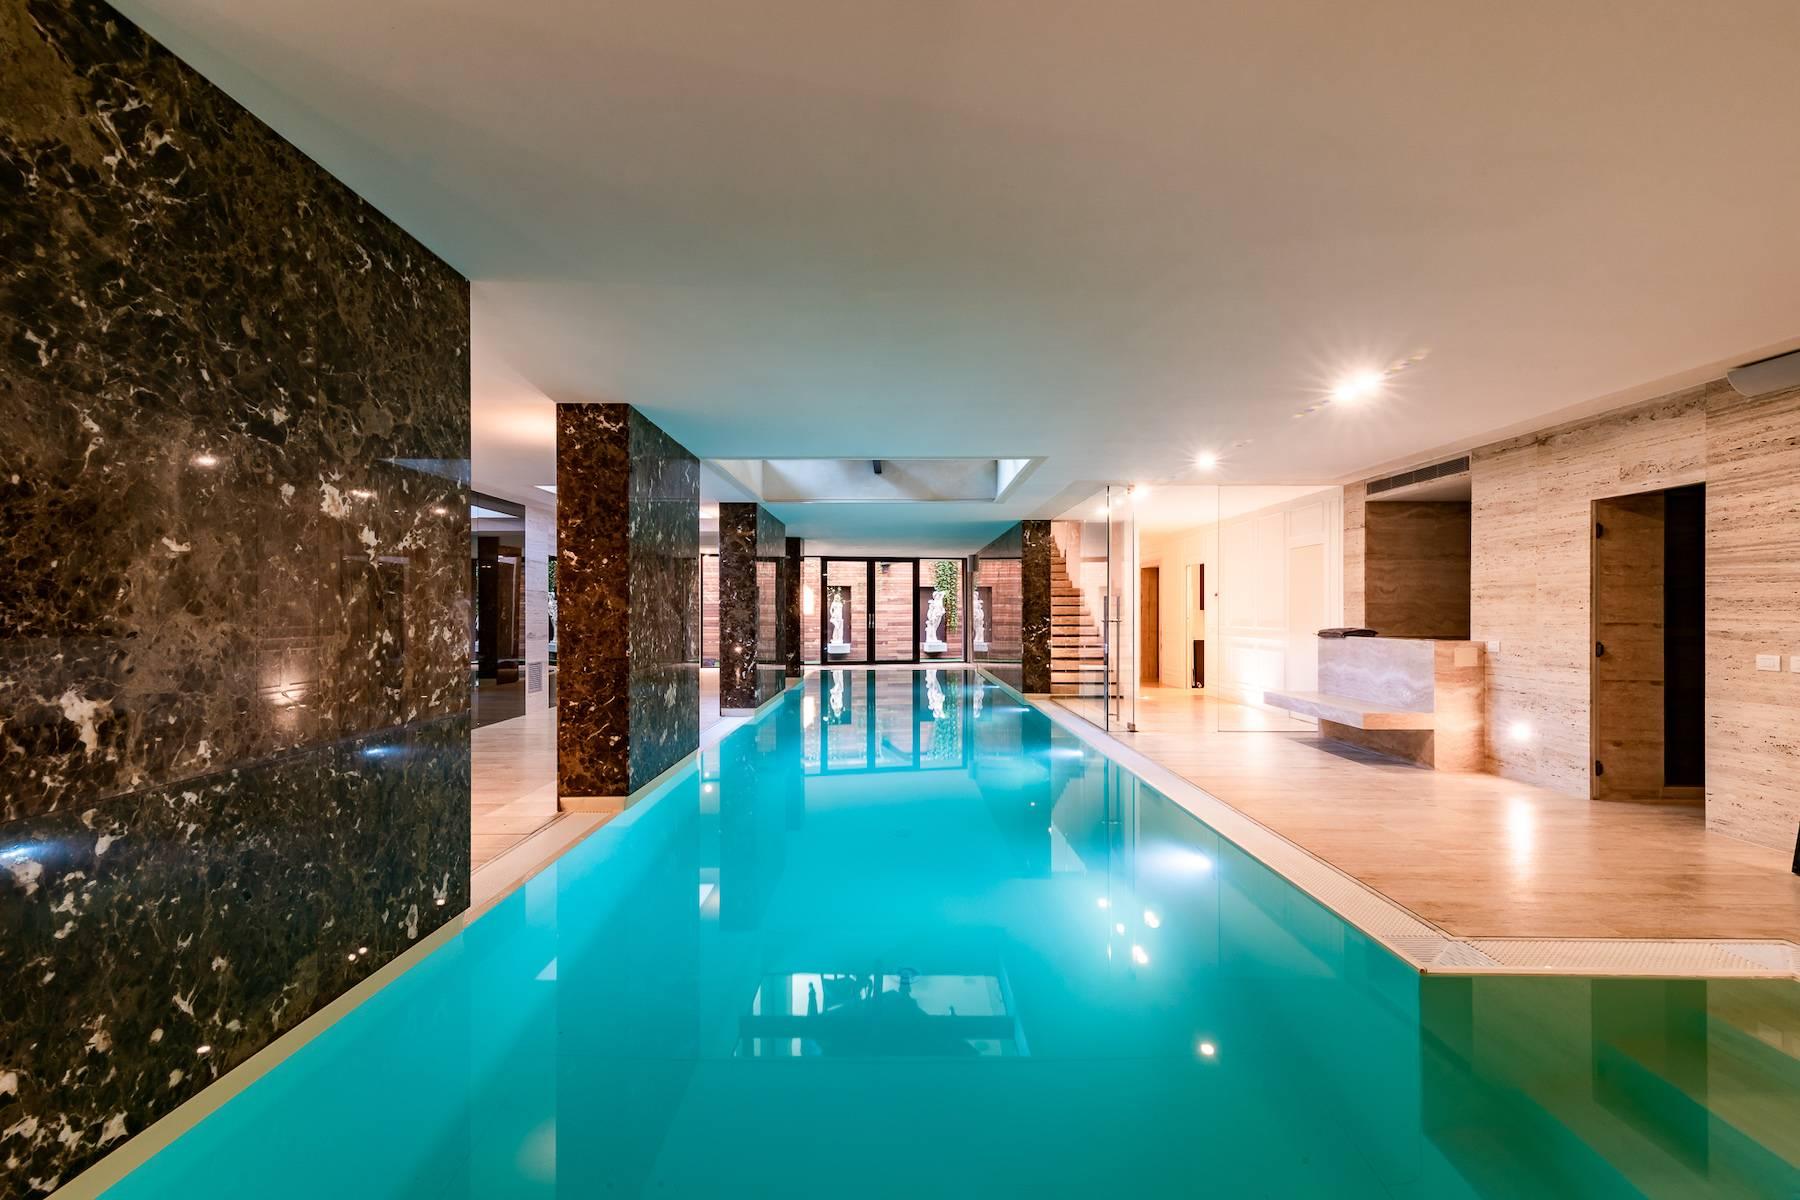 Prestigious detached villa with swimming pool in the exclusive San Siro area - 1